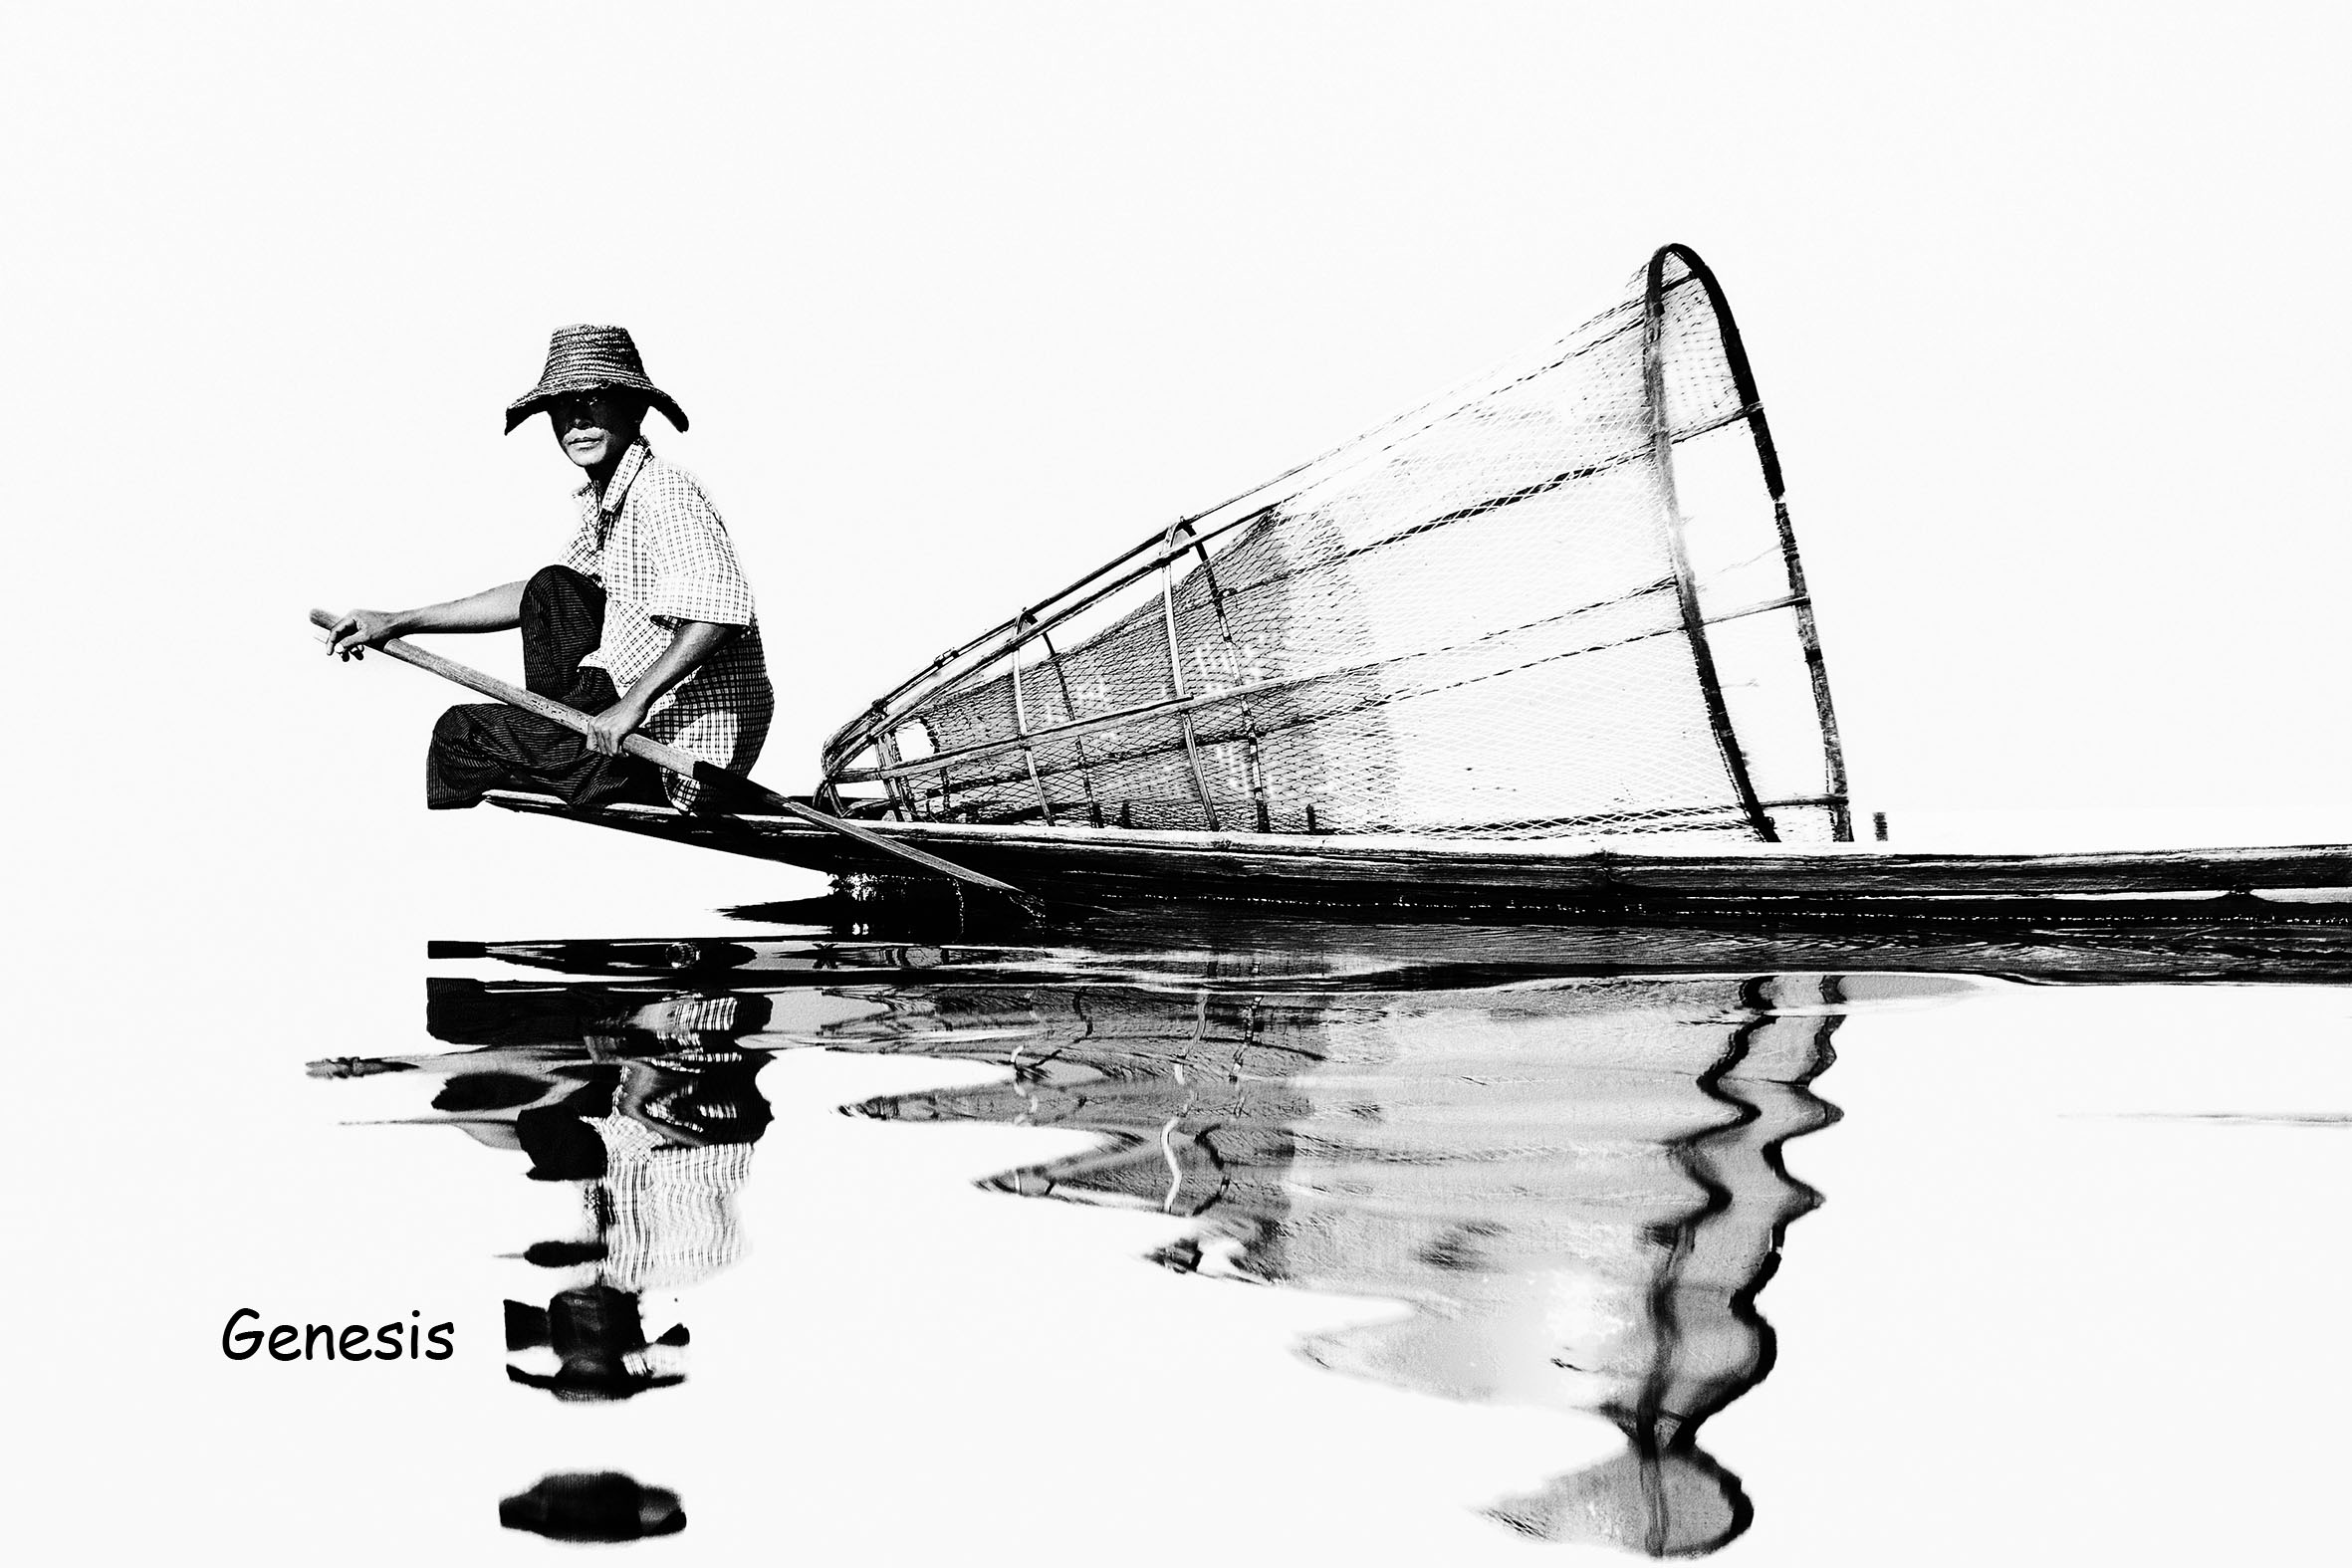 Pescatore sul Lago Inle, Myanmar...